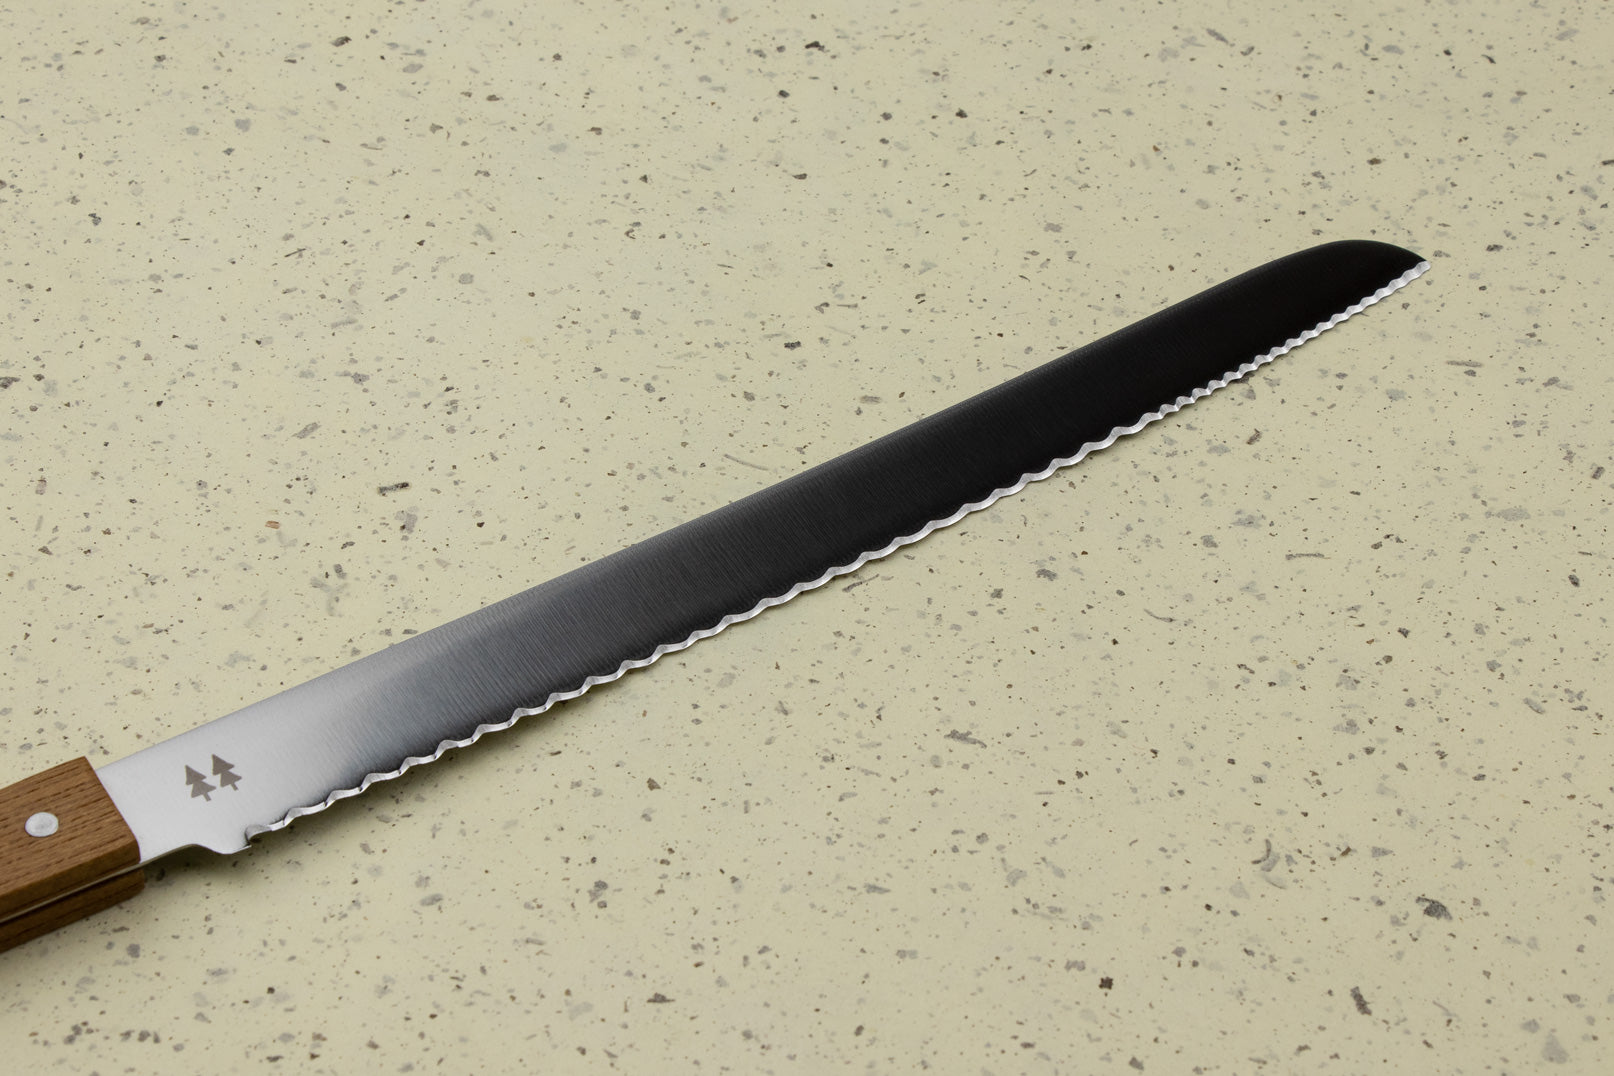 Shizu Hamono Morinoki Bread Knife 240mm